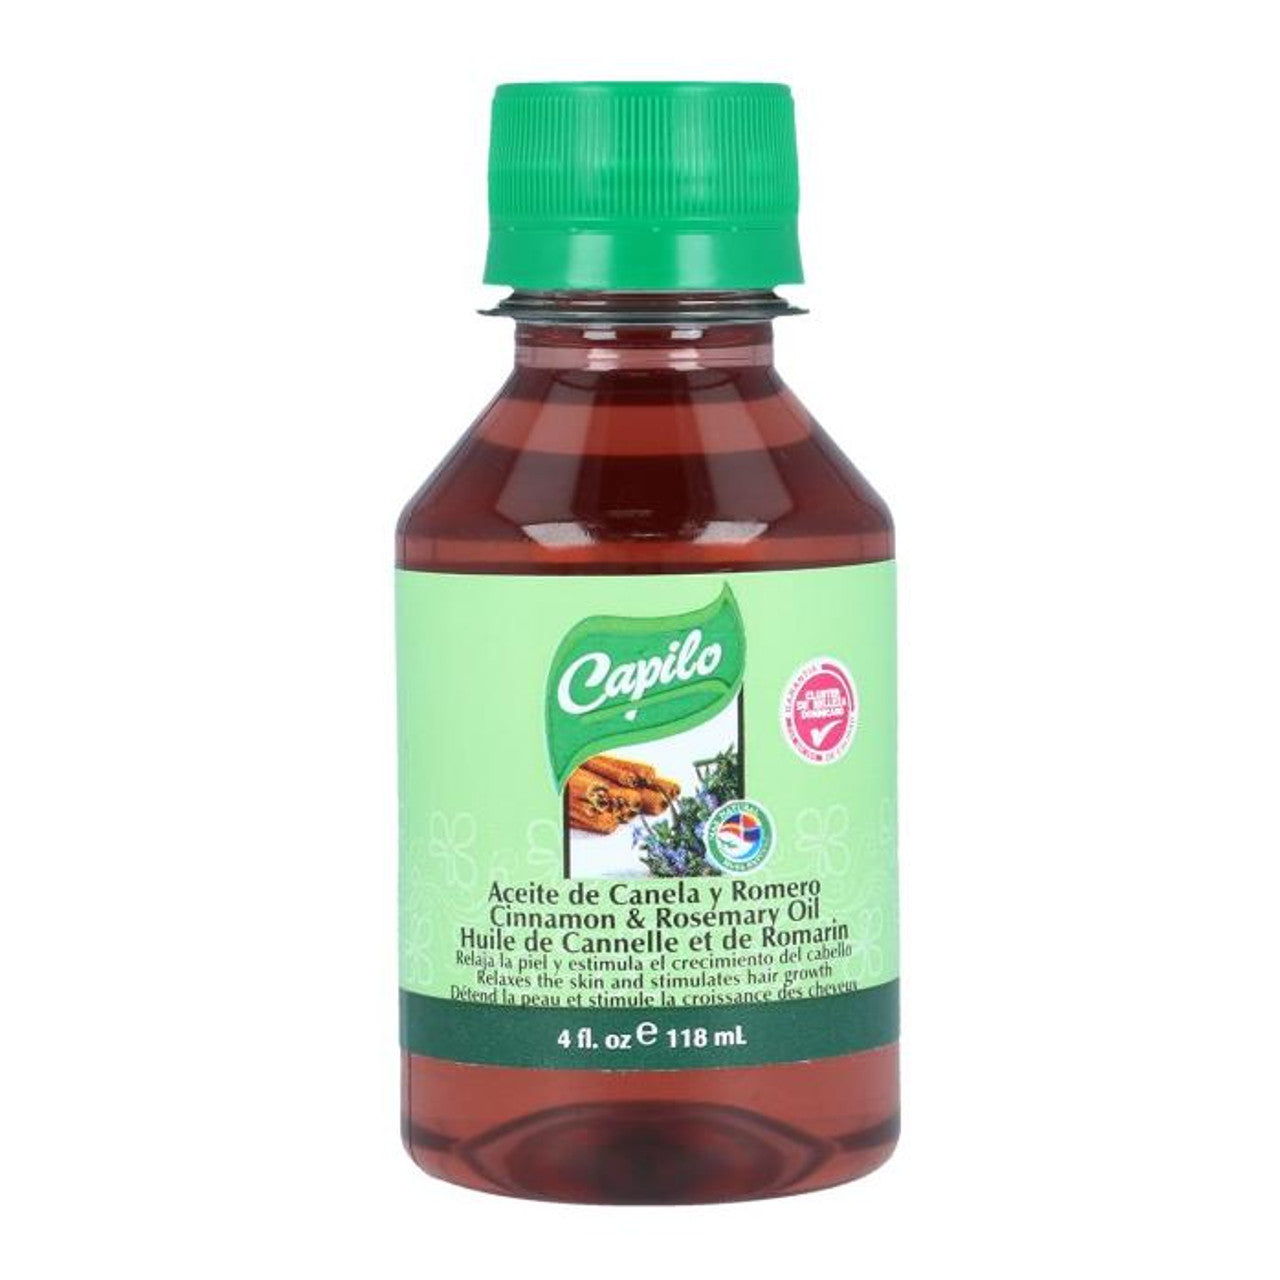 Capilo Aceite de Canela y Romero / Cinammon & Rosemary oil 4 fl. oz